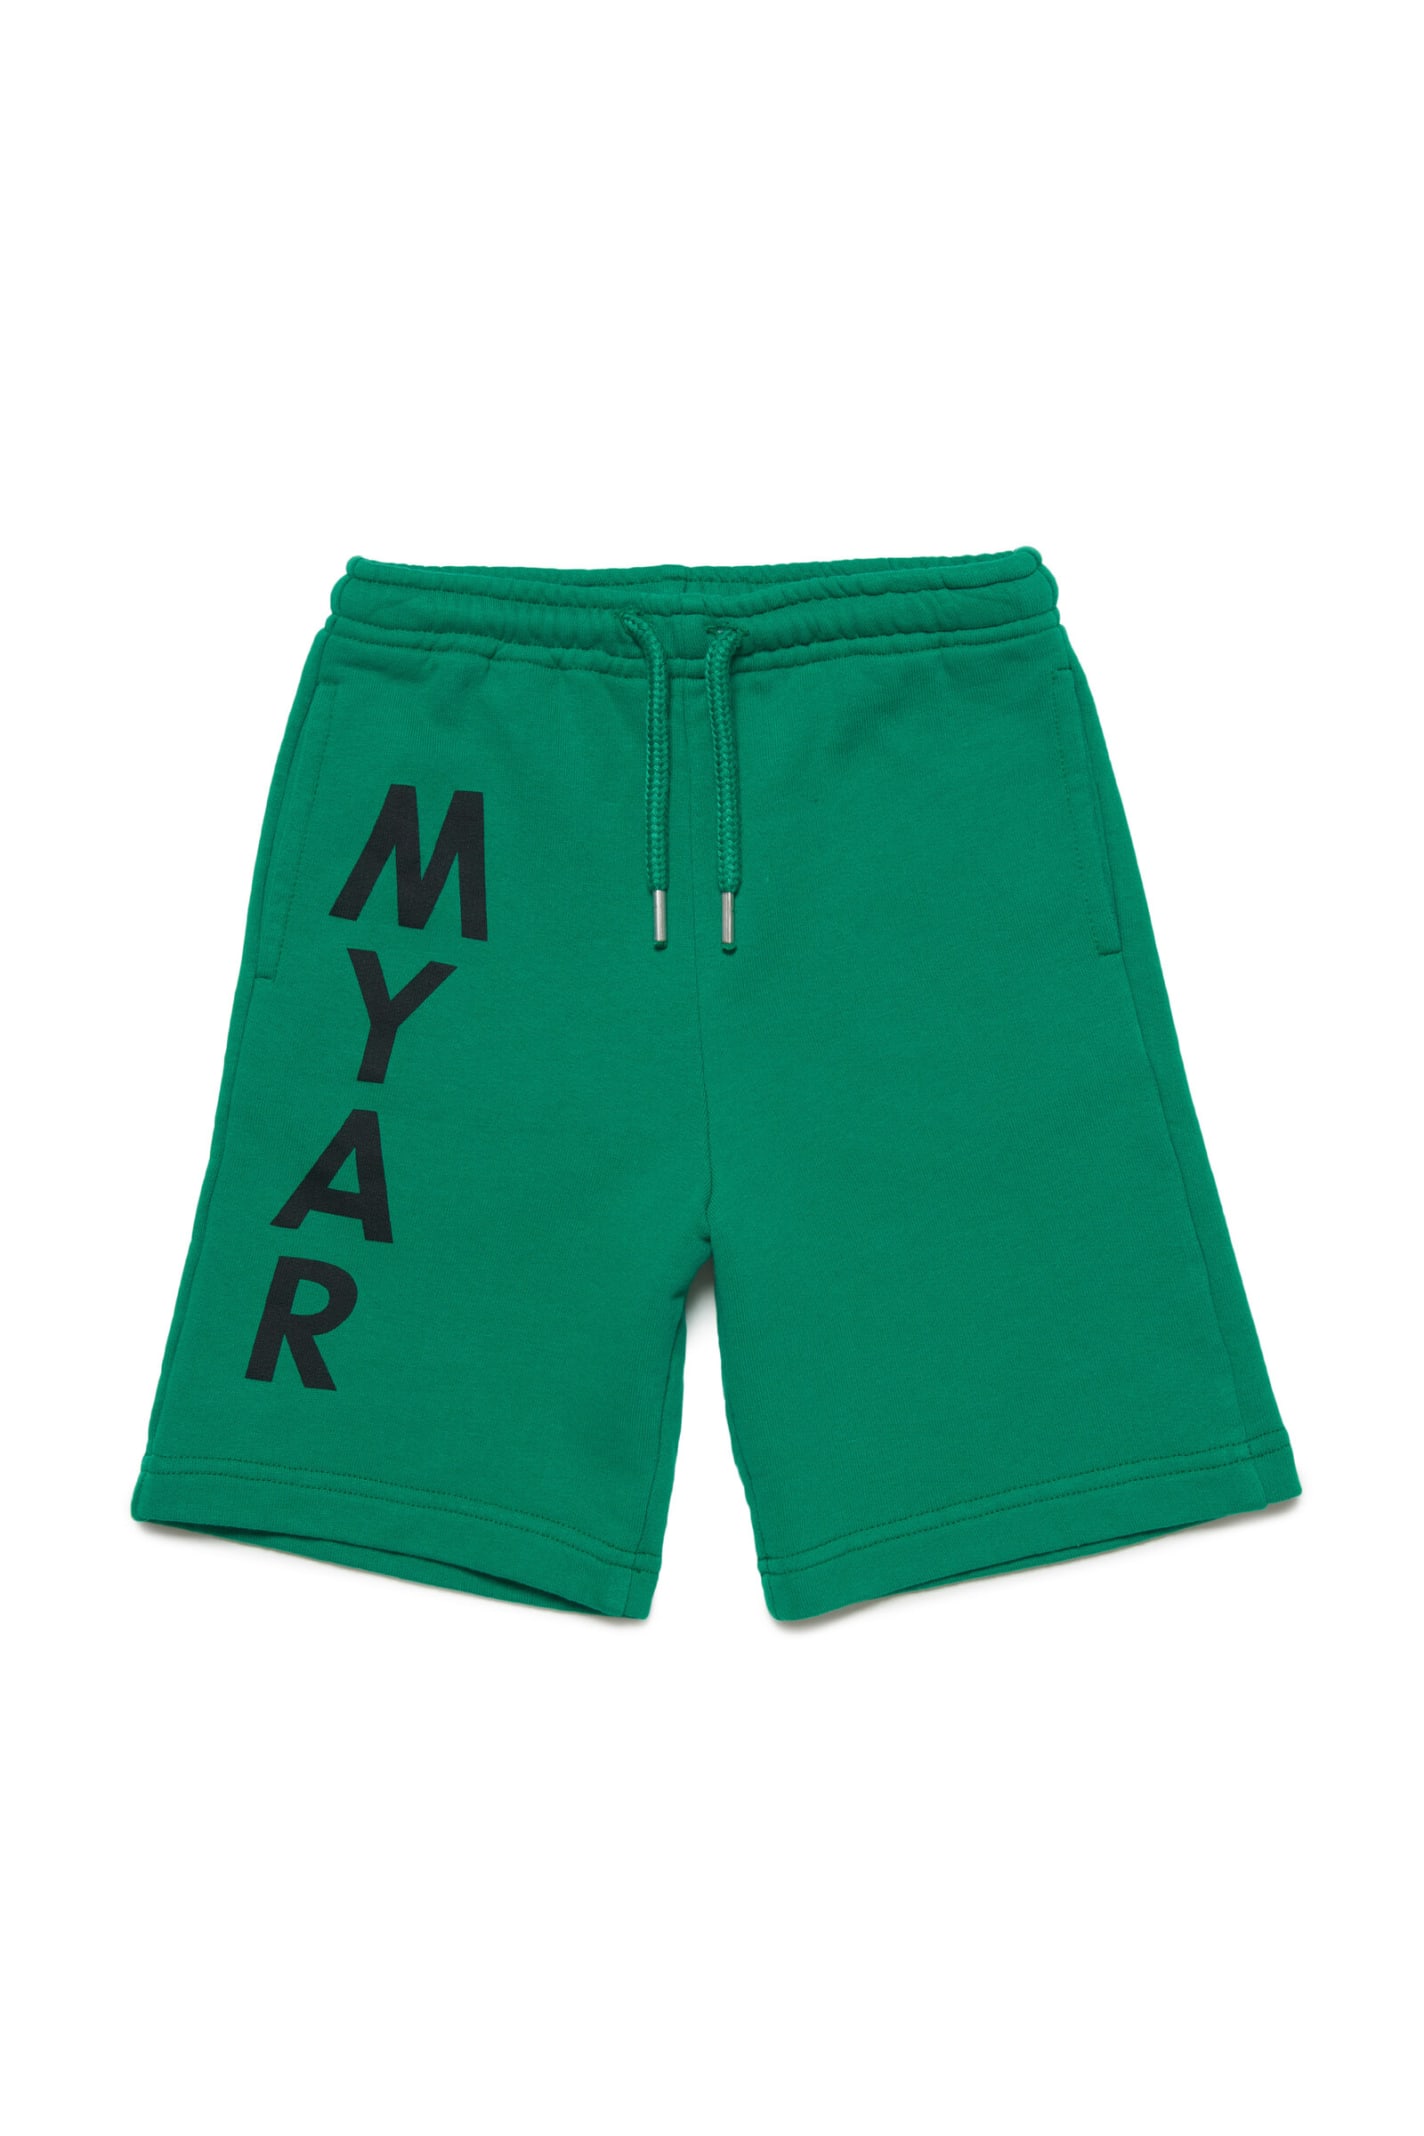 MYAR Myp6u Shorts Myar Deadstock Green Plush Shorts With Vertical Logo